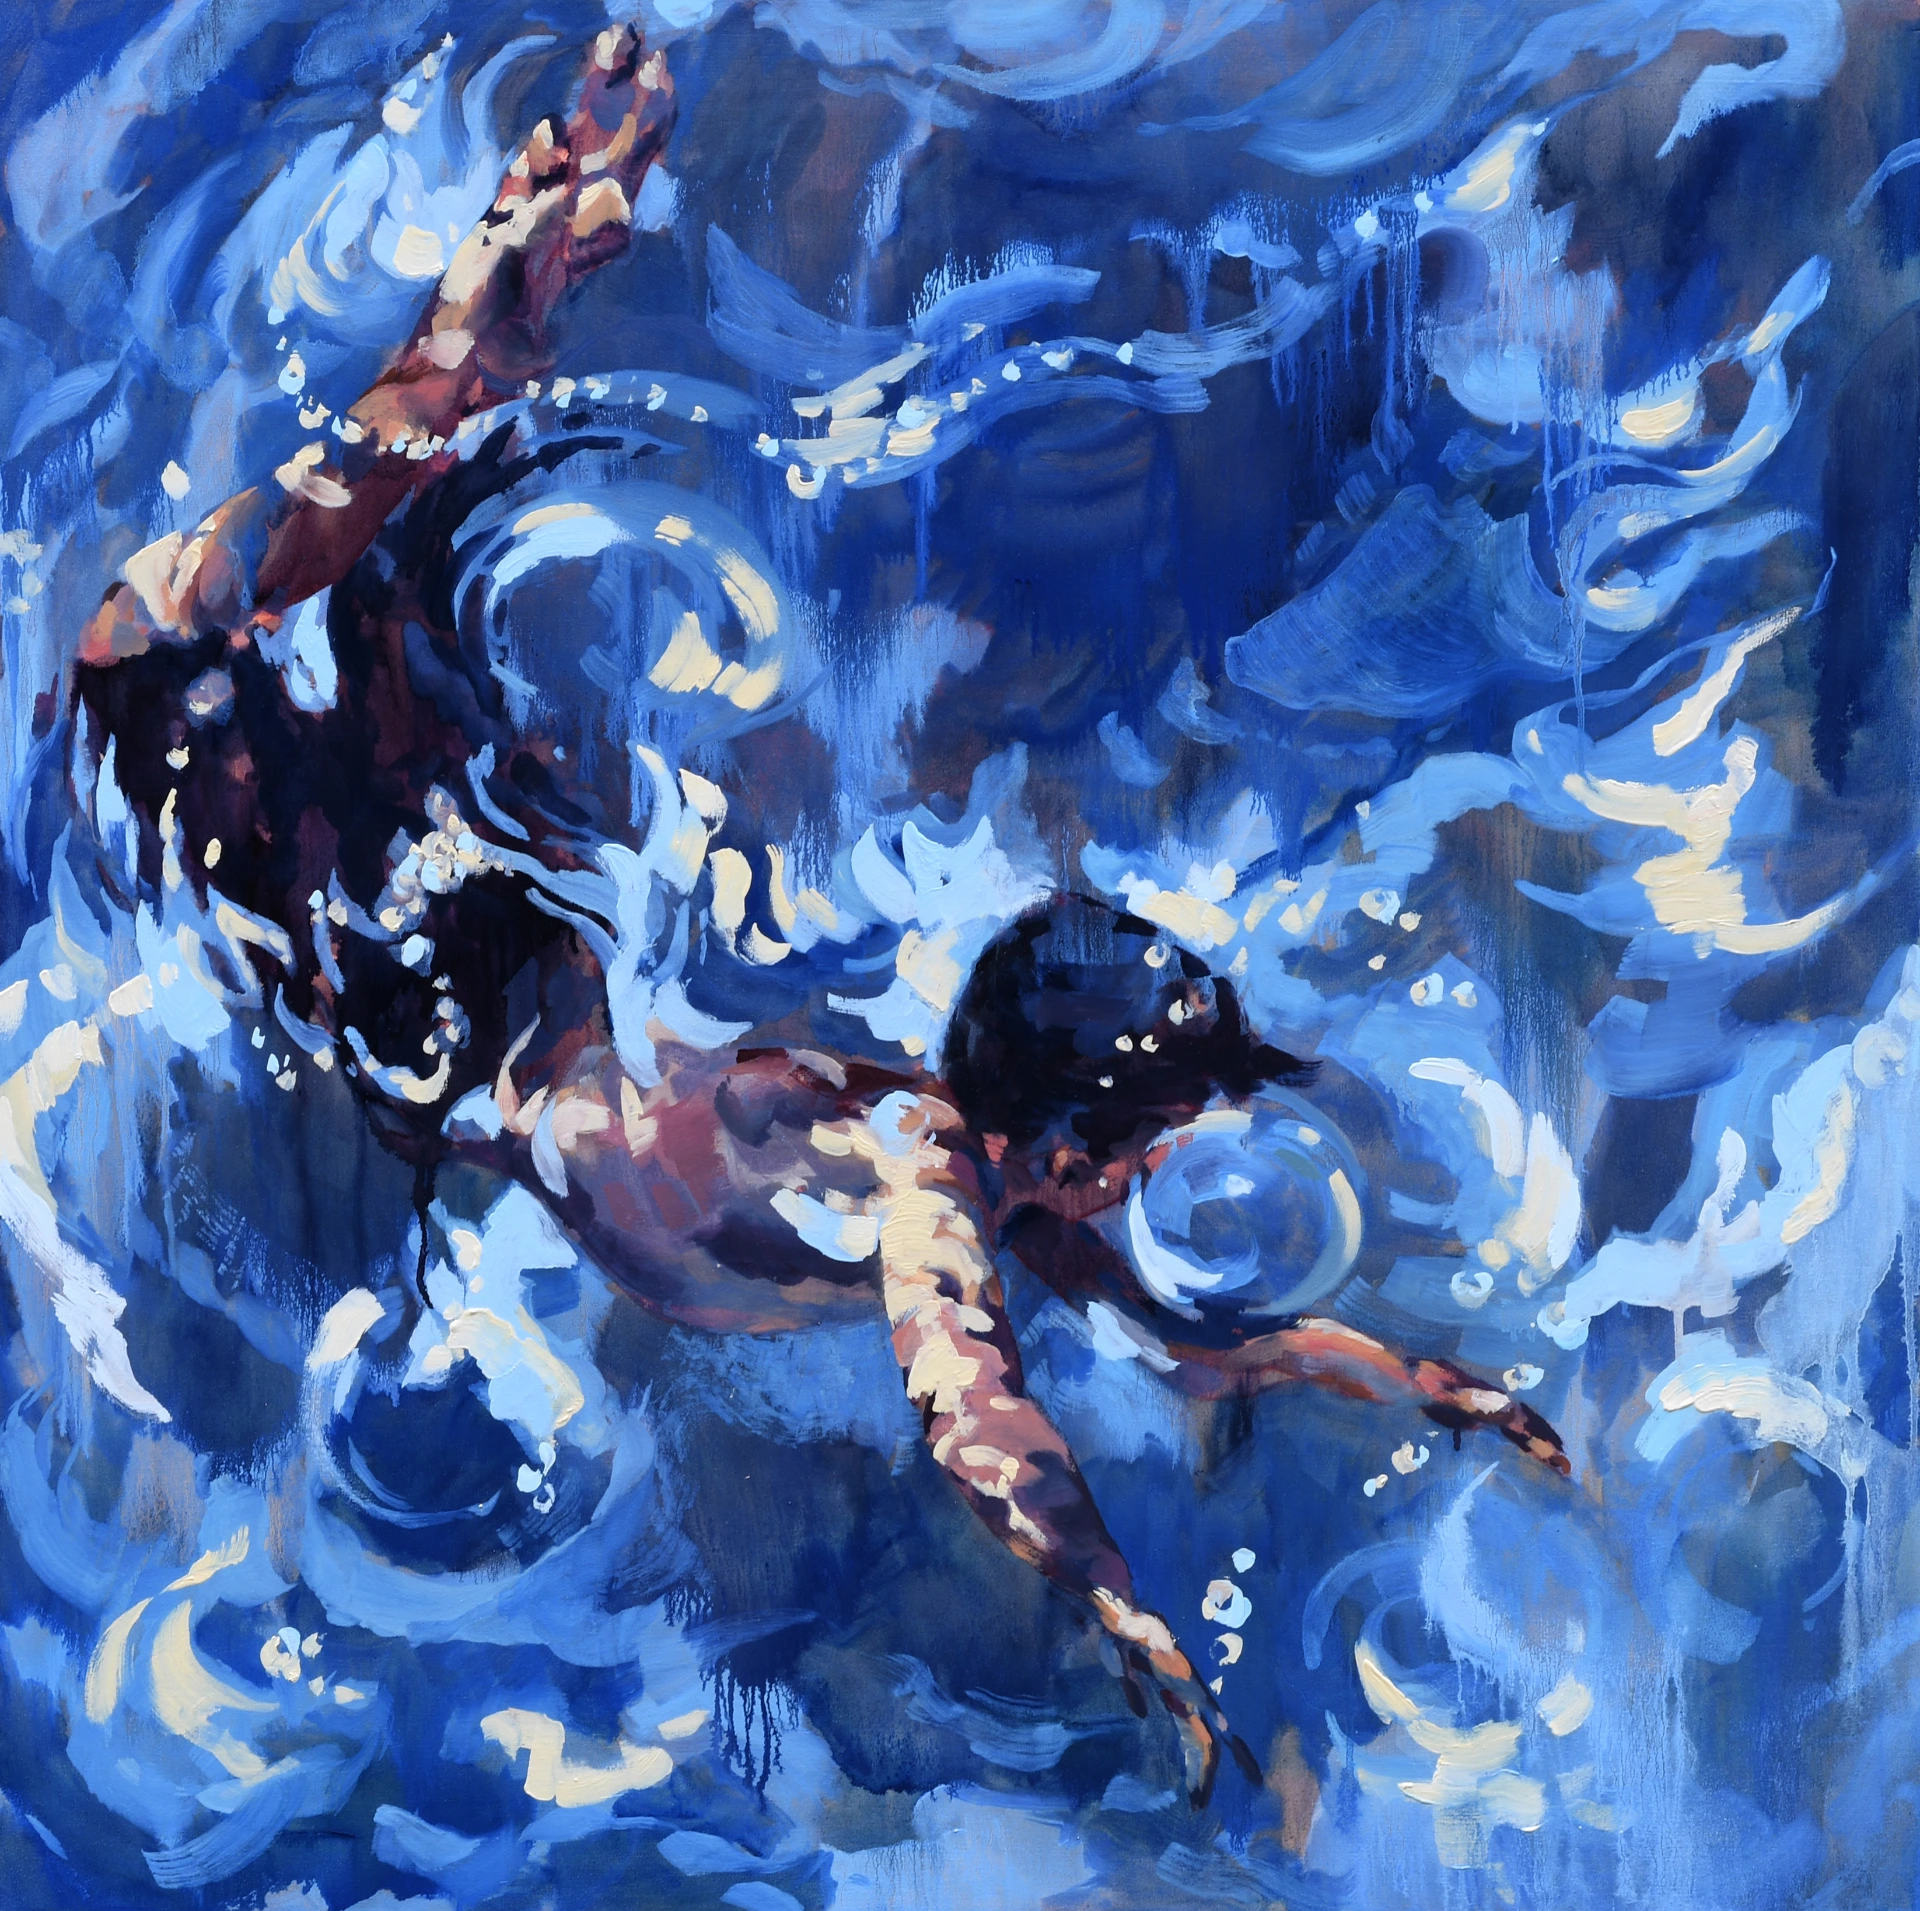 Underwater-explorer-2-36x36-dominique-walker-ian-tan-fine-art-gallery-vancouver 